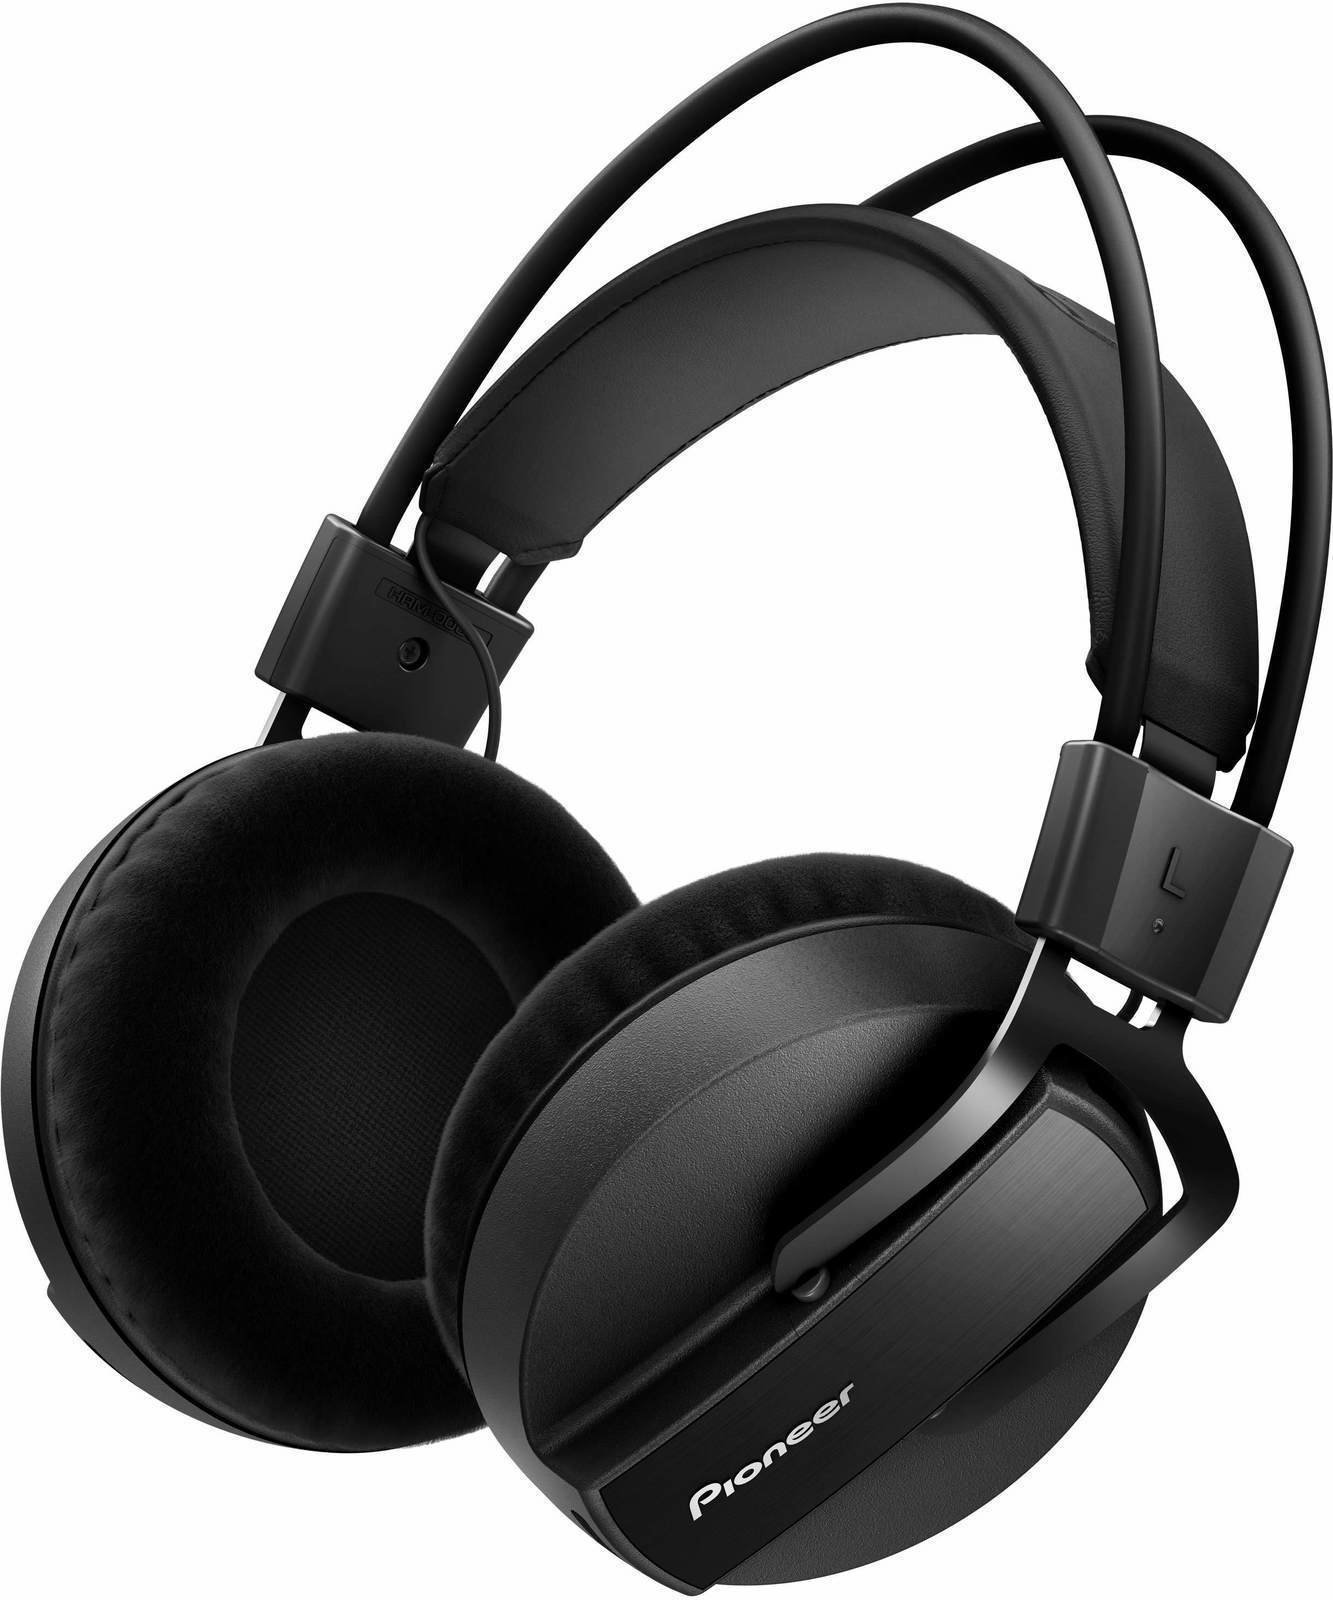 Studio Headphones Pioneer Dj HRM-7